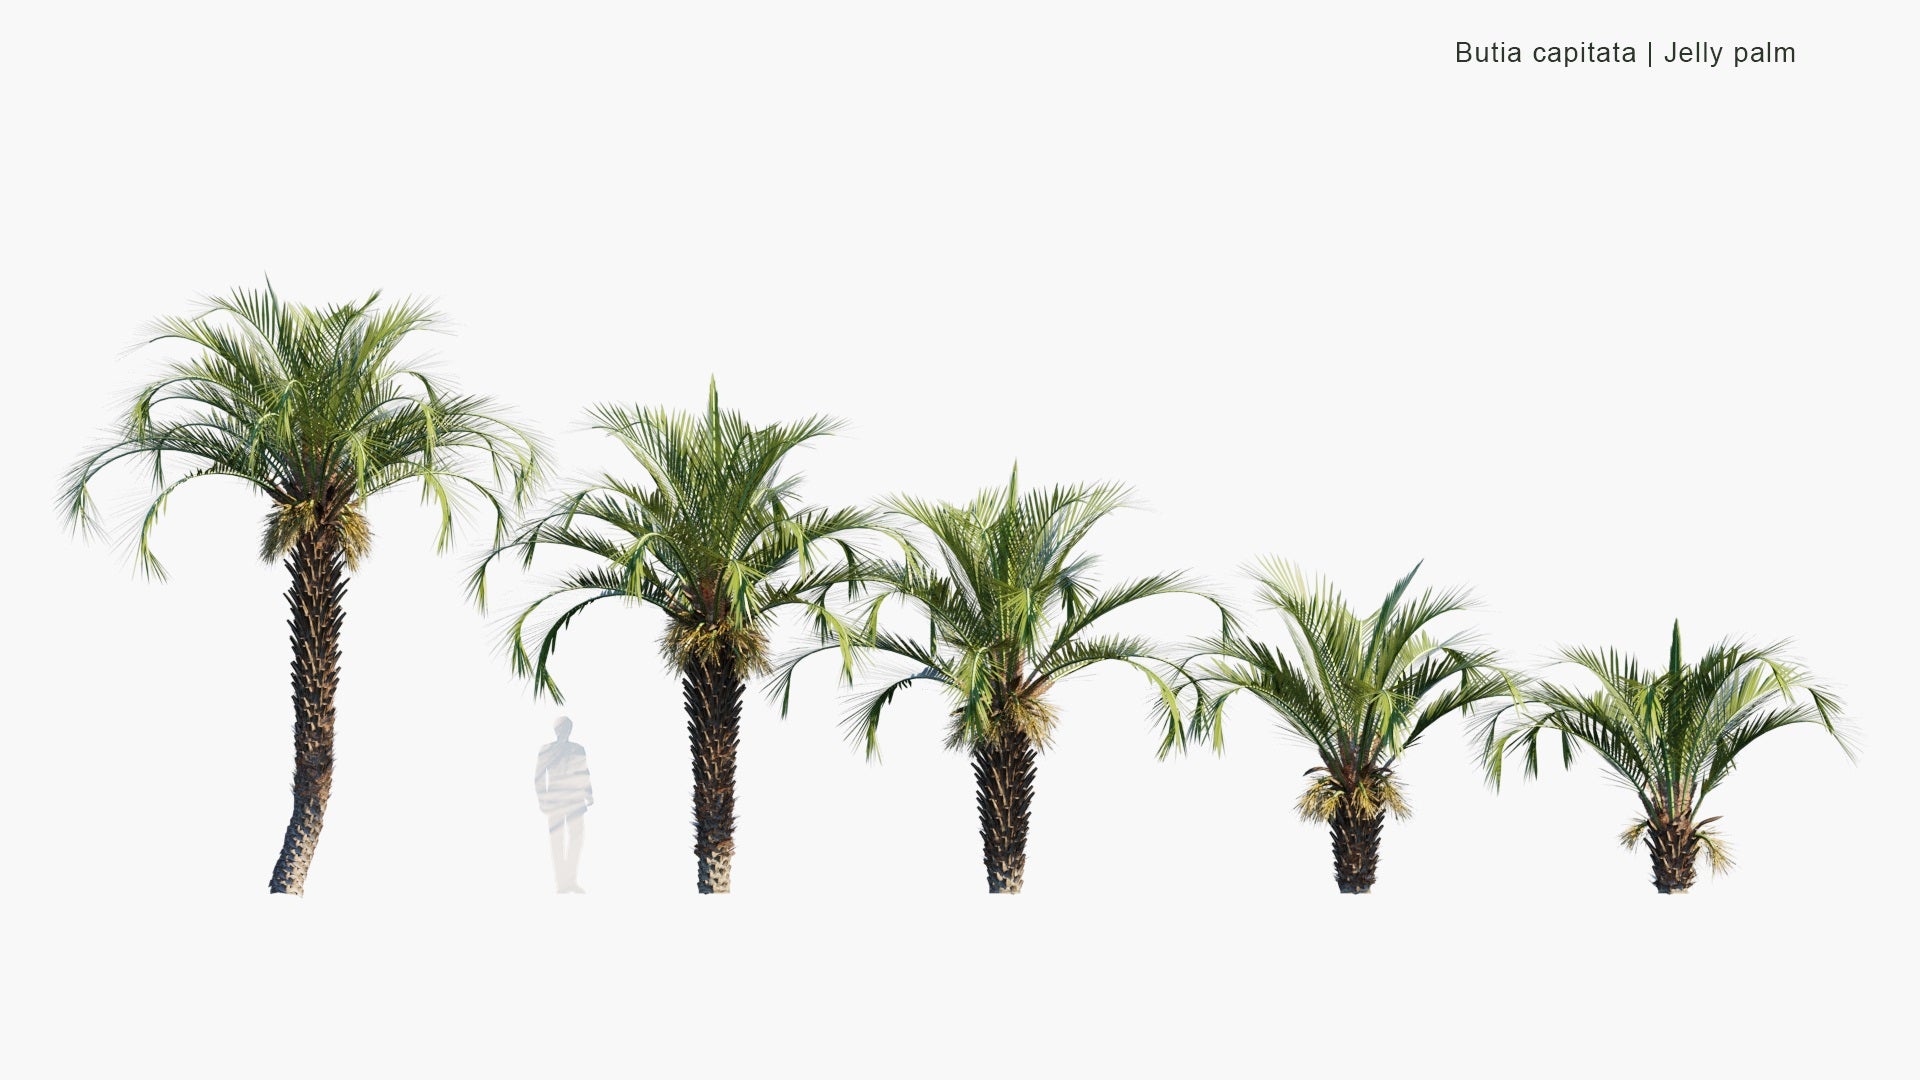 Low Poly Butia Capitata - Jelly Palm, Coquinho-Azedo (3D Model)